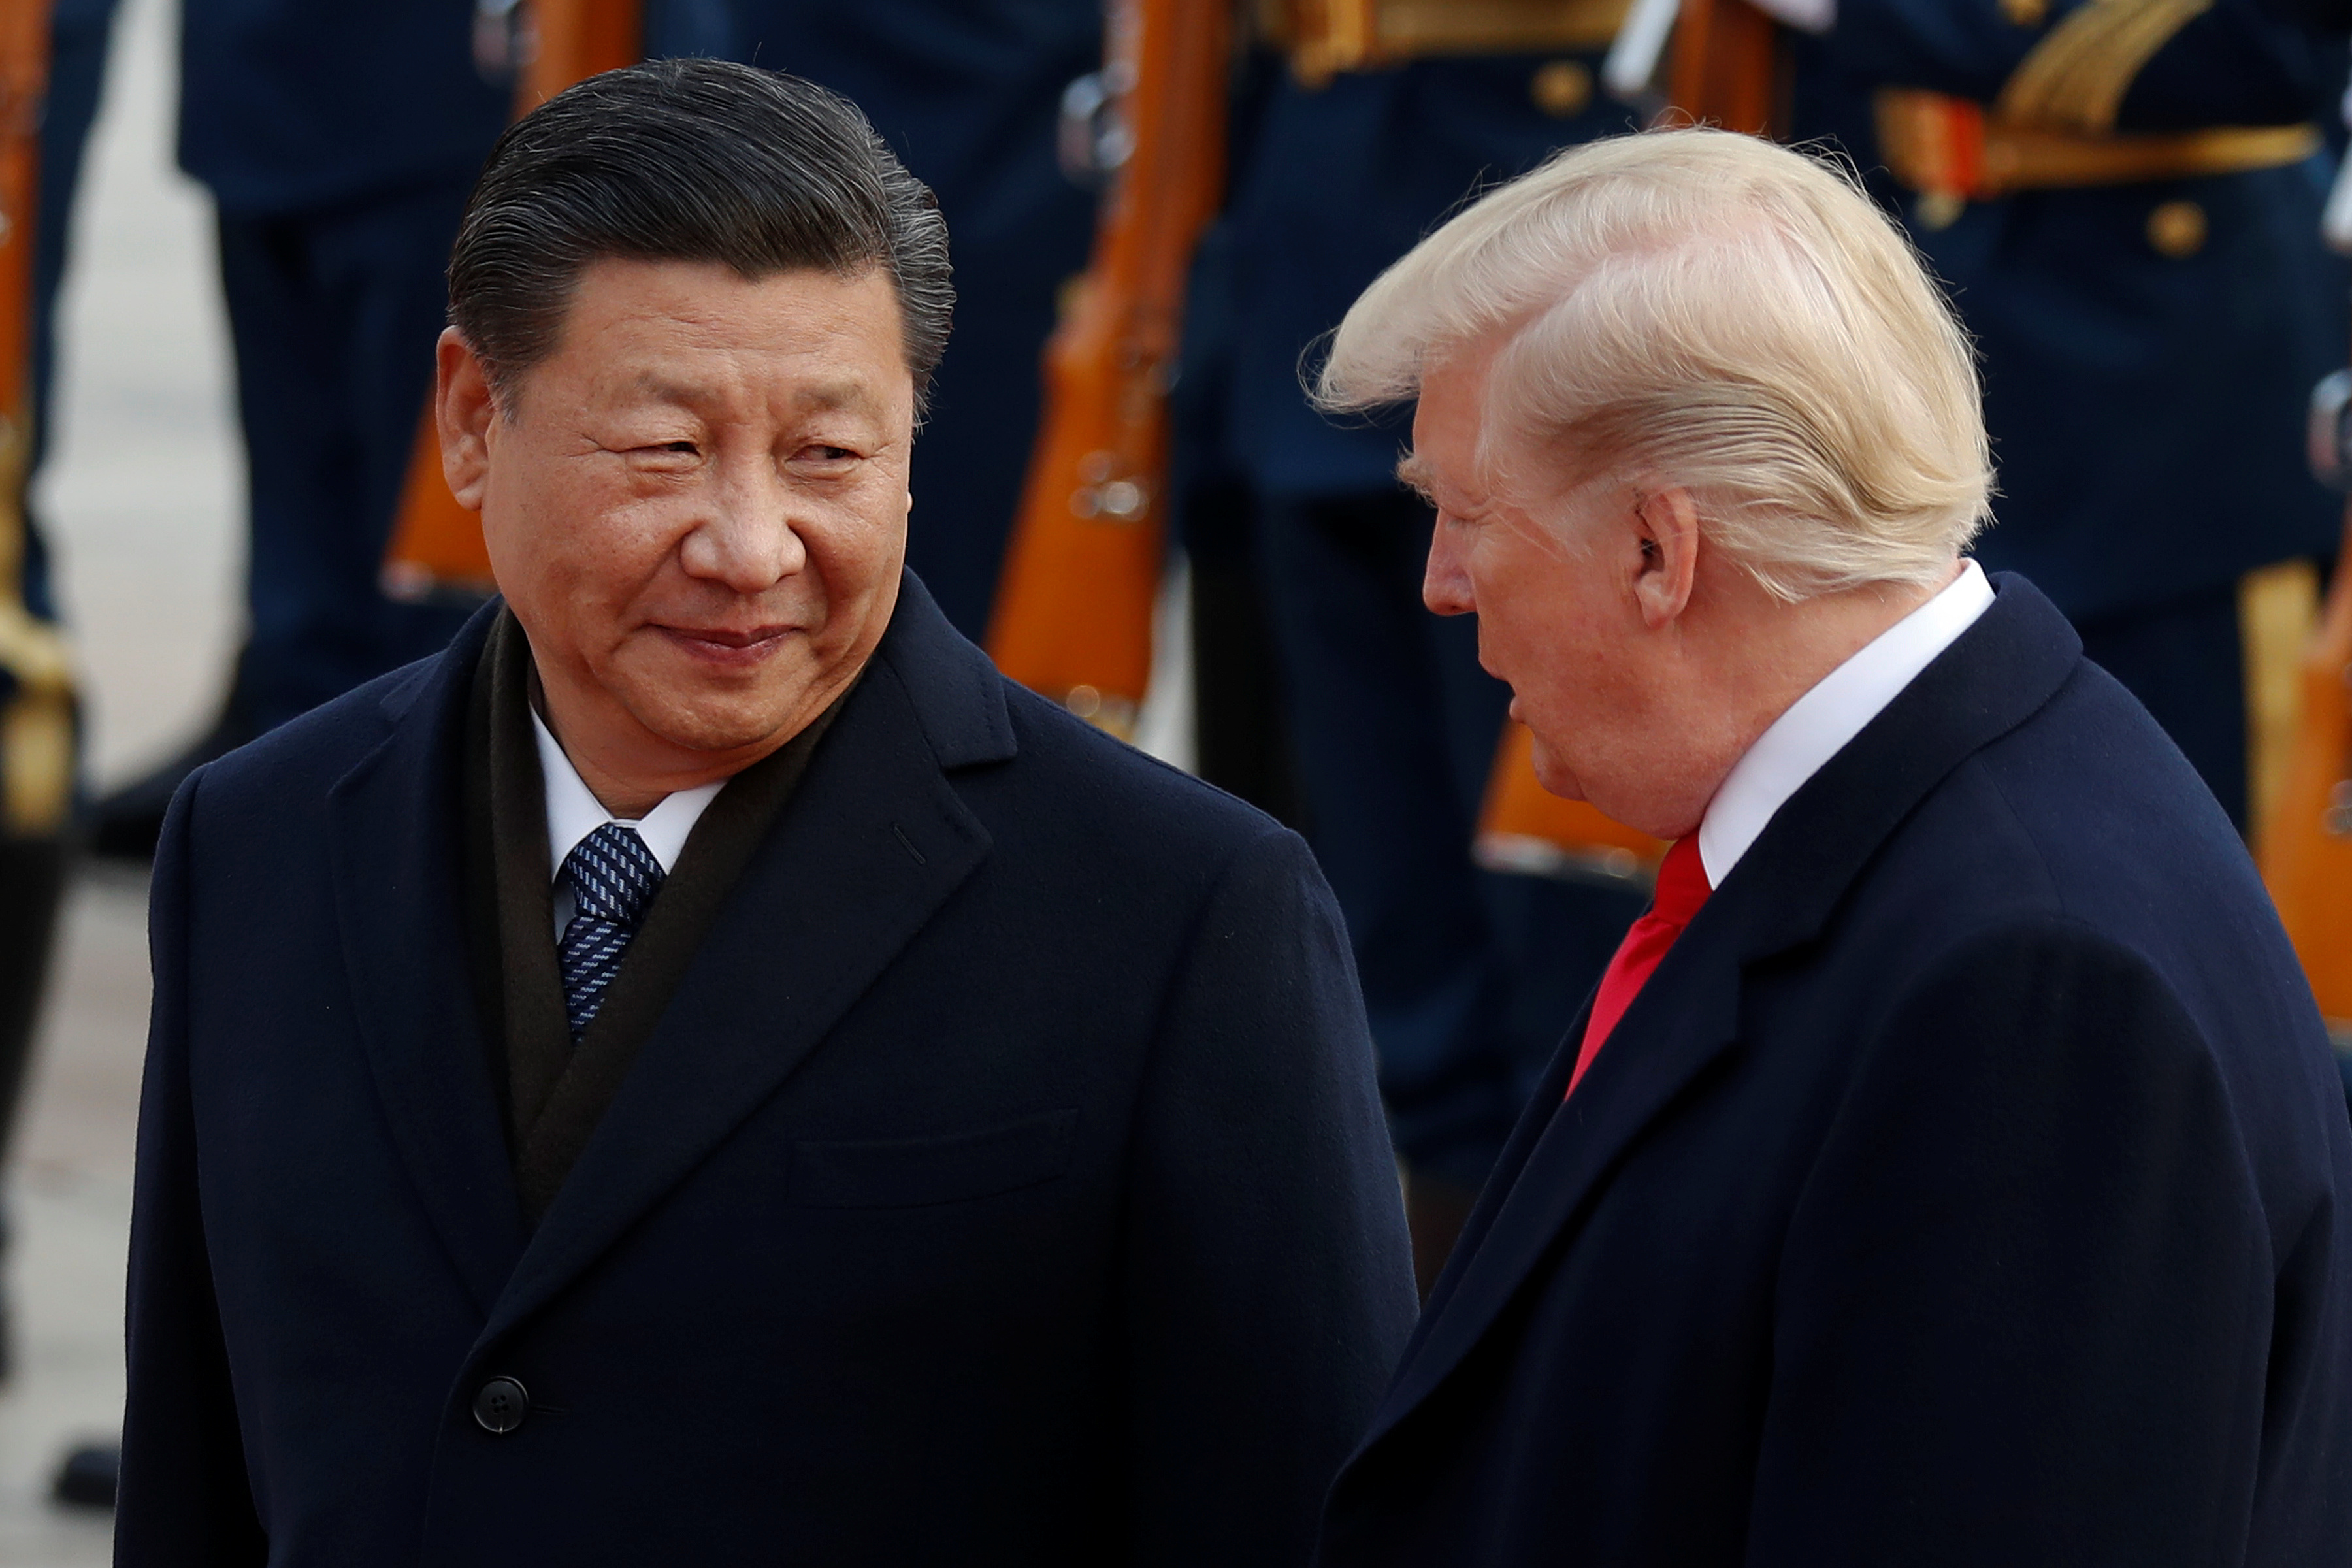 الرئيس الأمريكى والرئيس الصينى